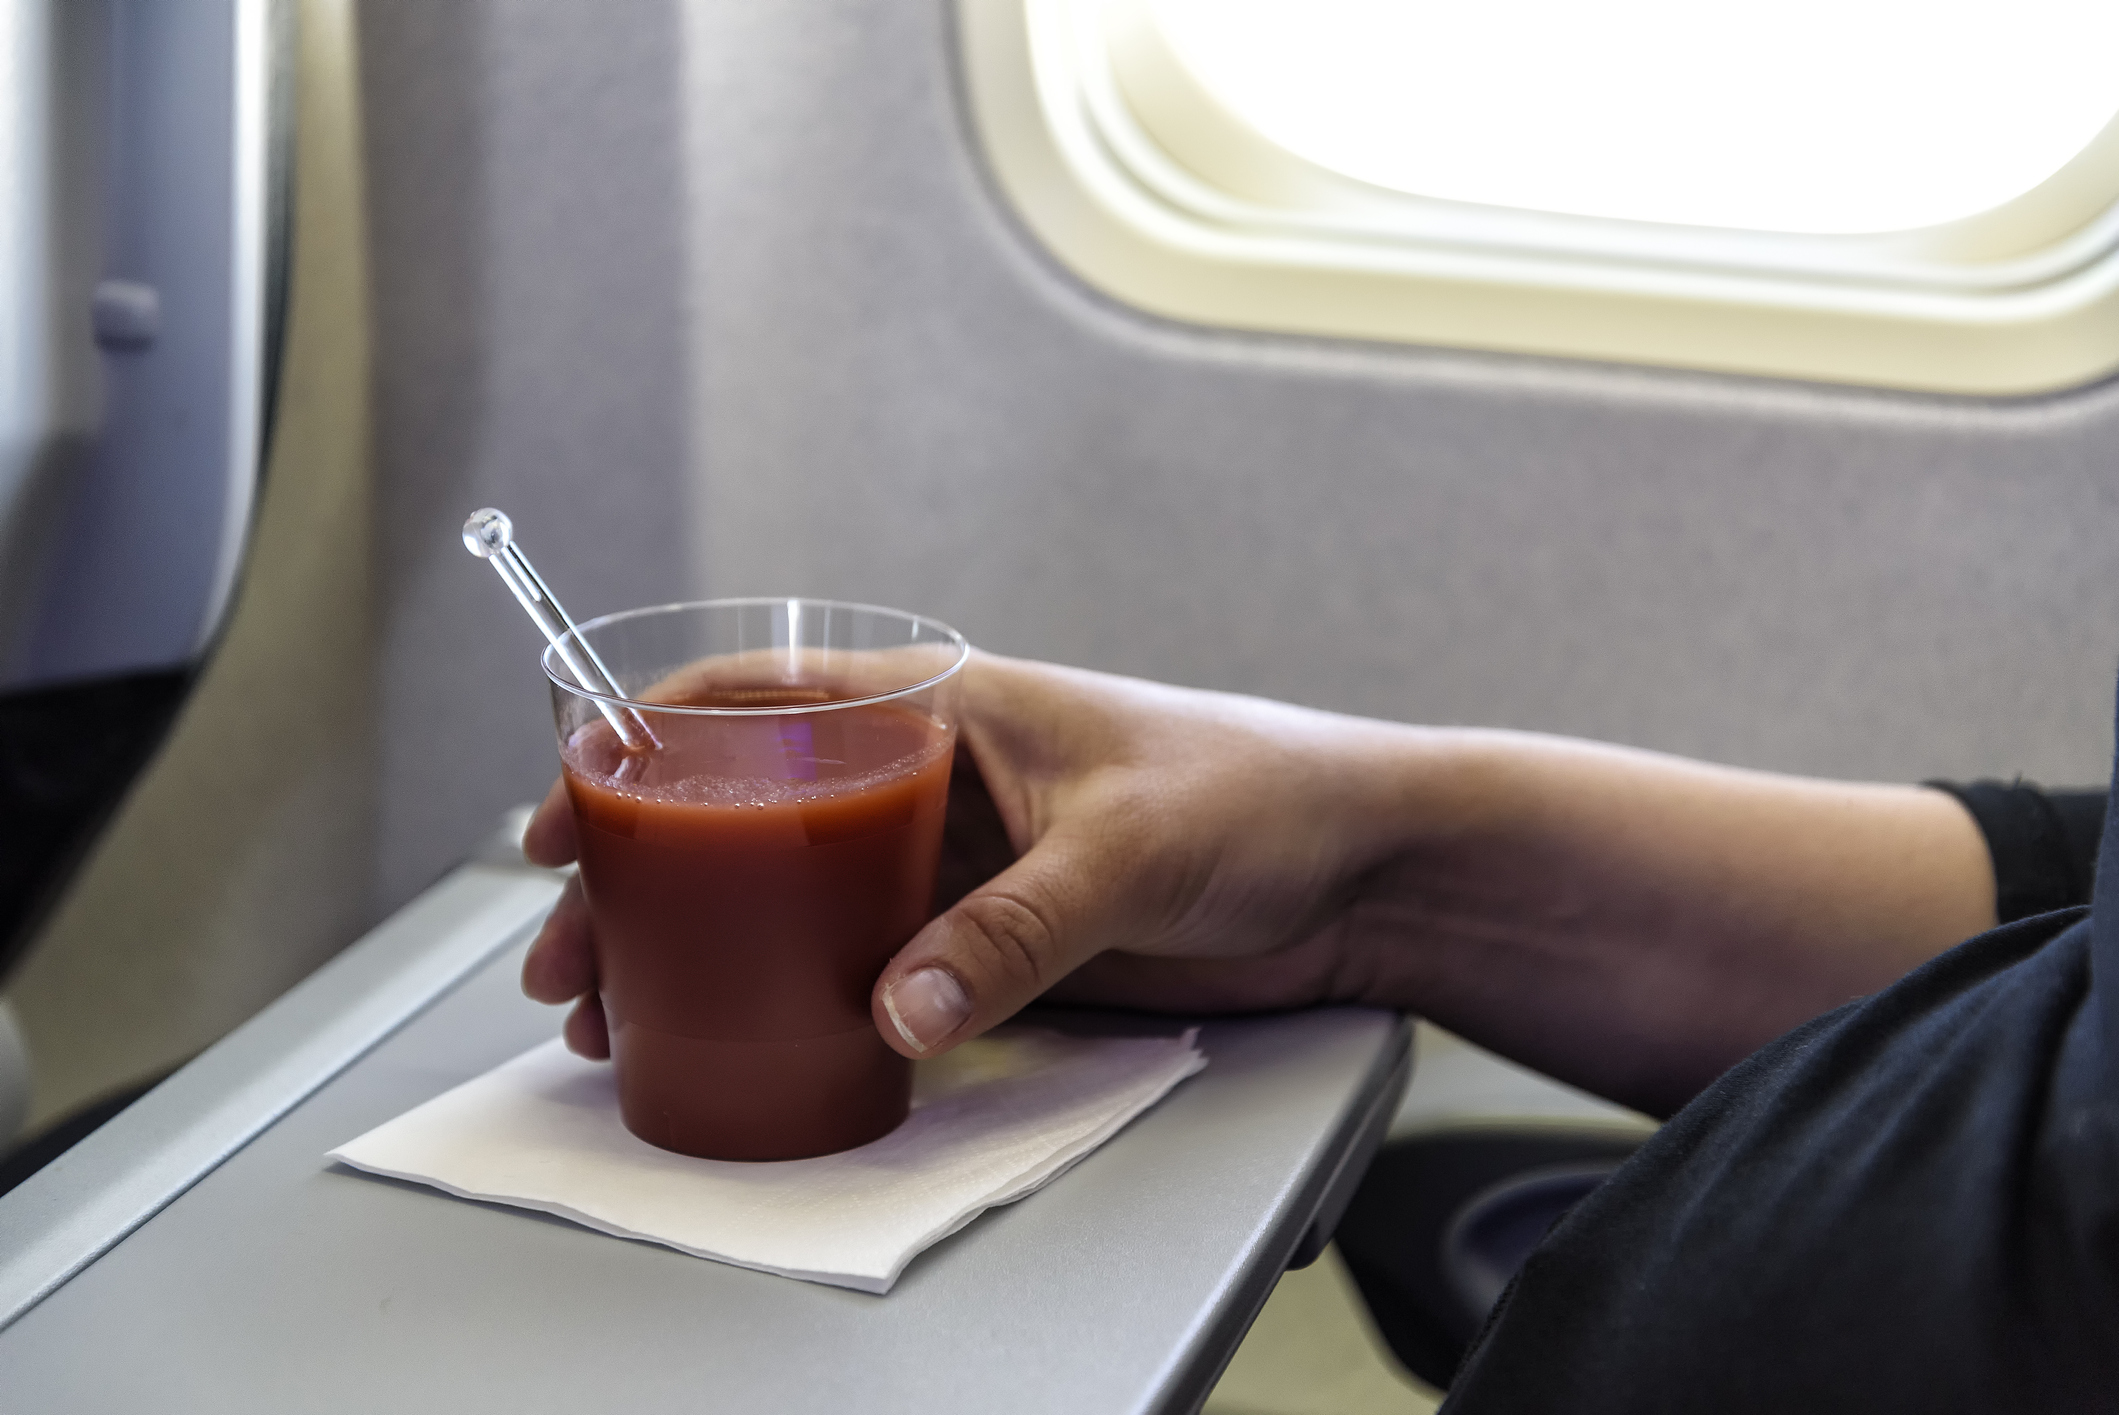 Nærbillede af en hånd, der griber en plastikbæger med tomatjuice, som er placeret på en serviet på et klapbord i et fly